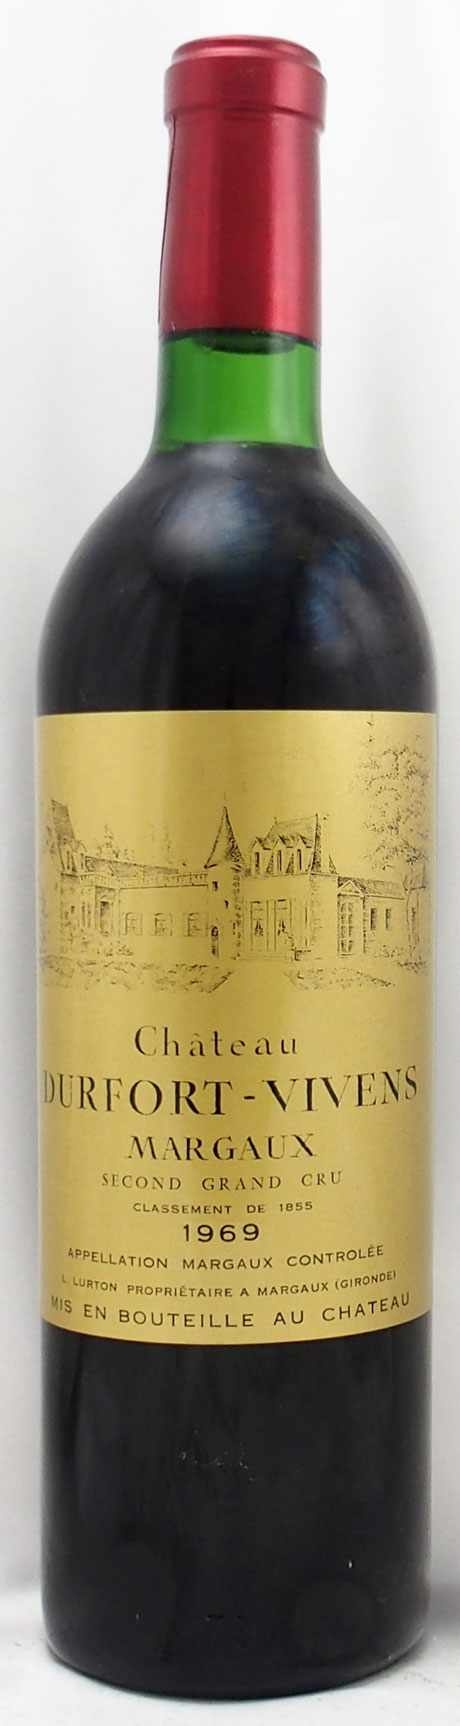 シャトーデュフォールヴィヴァン 1982ワイン - ワイン